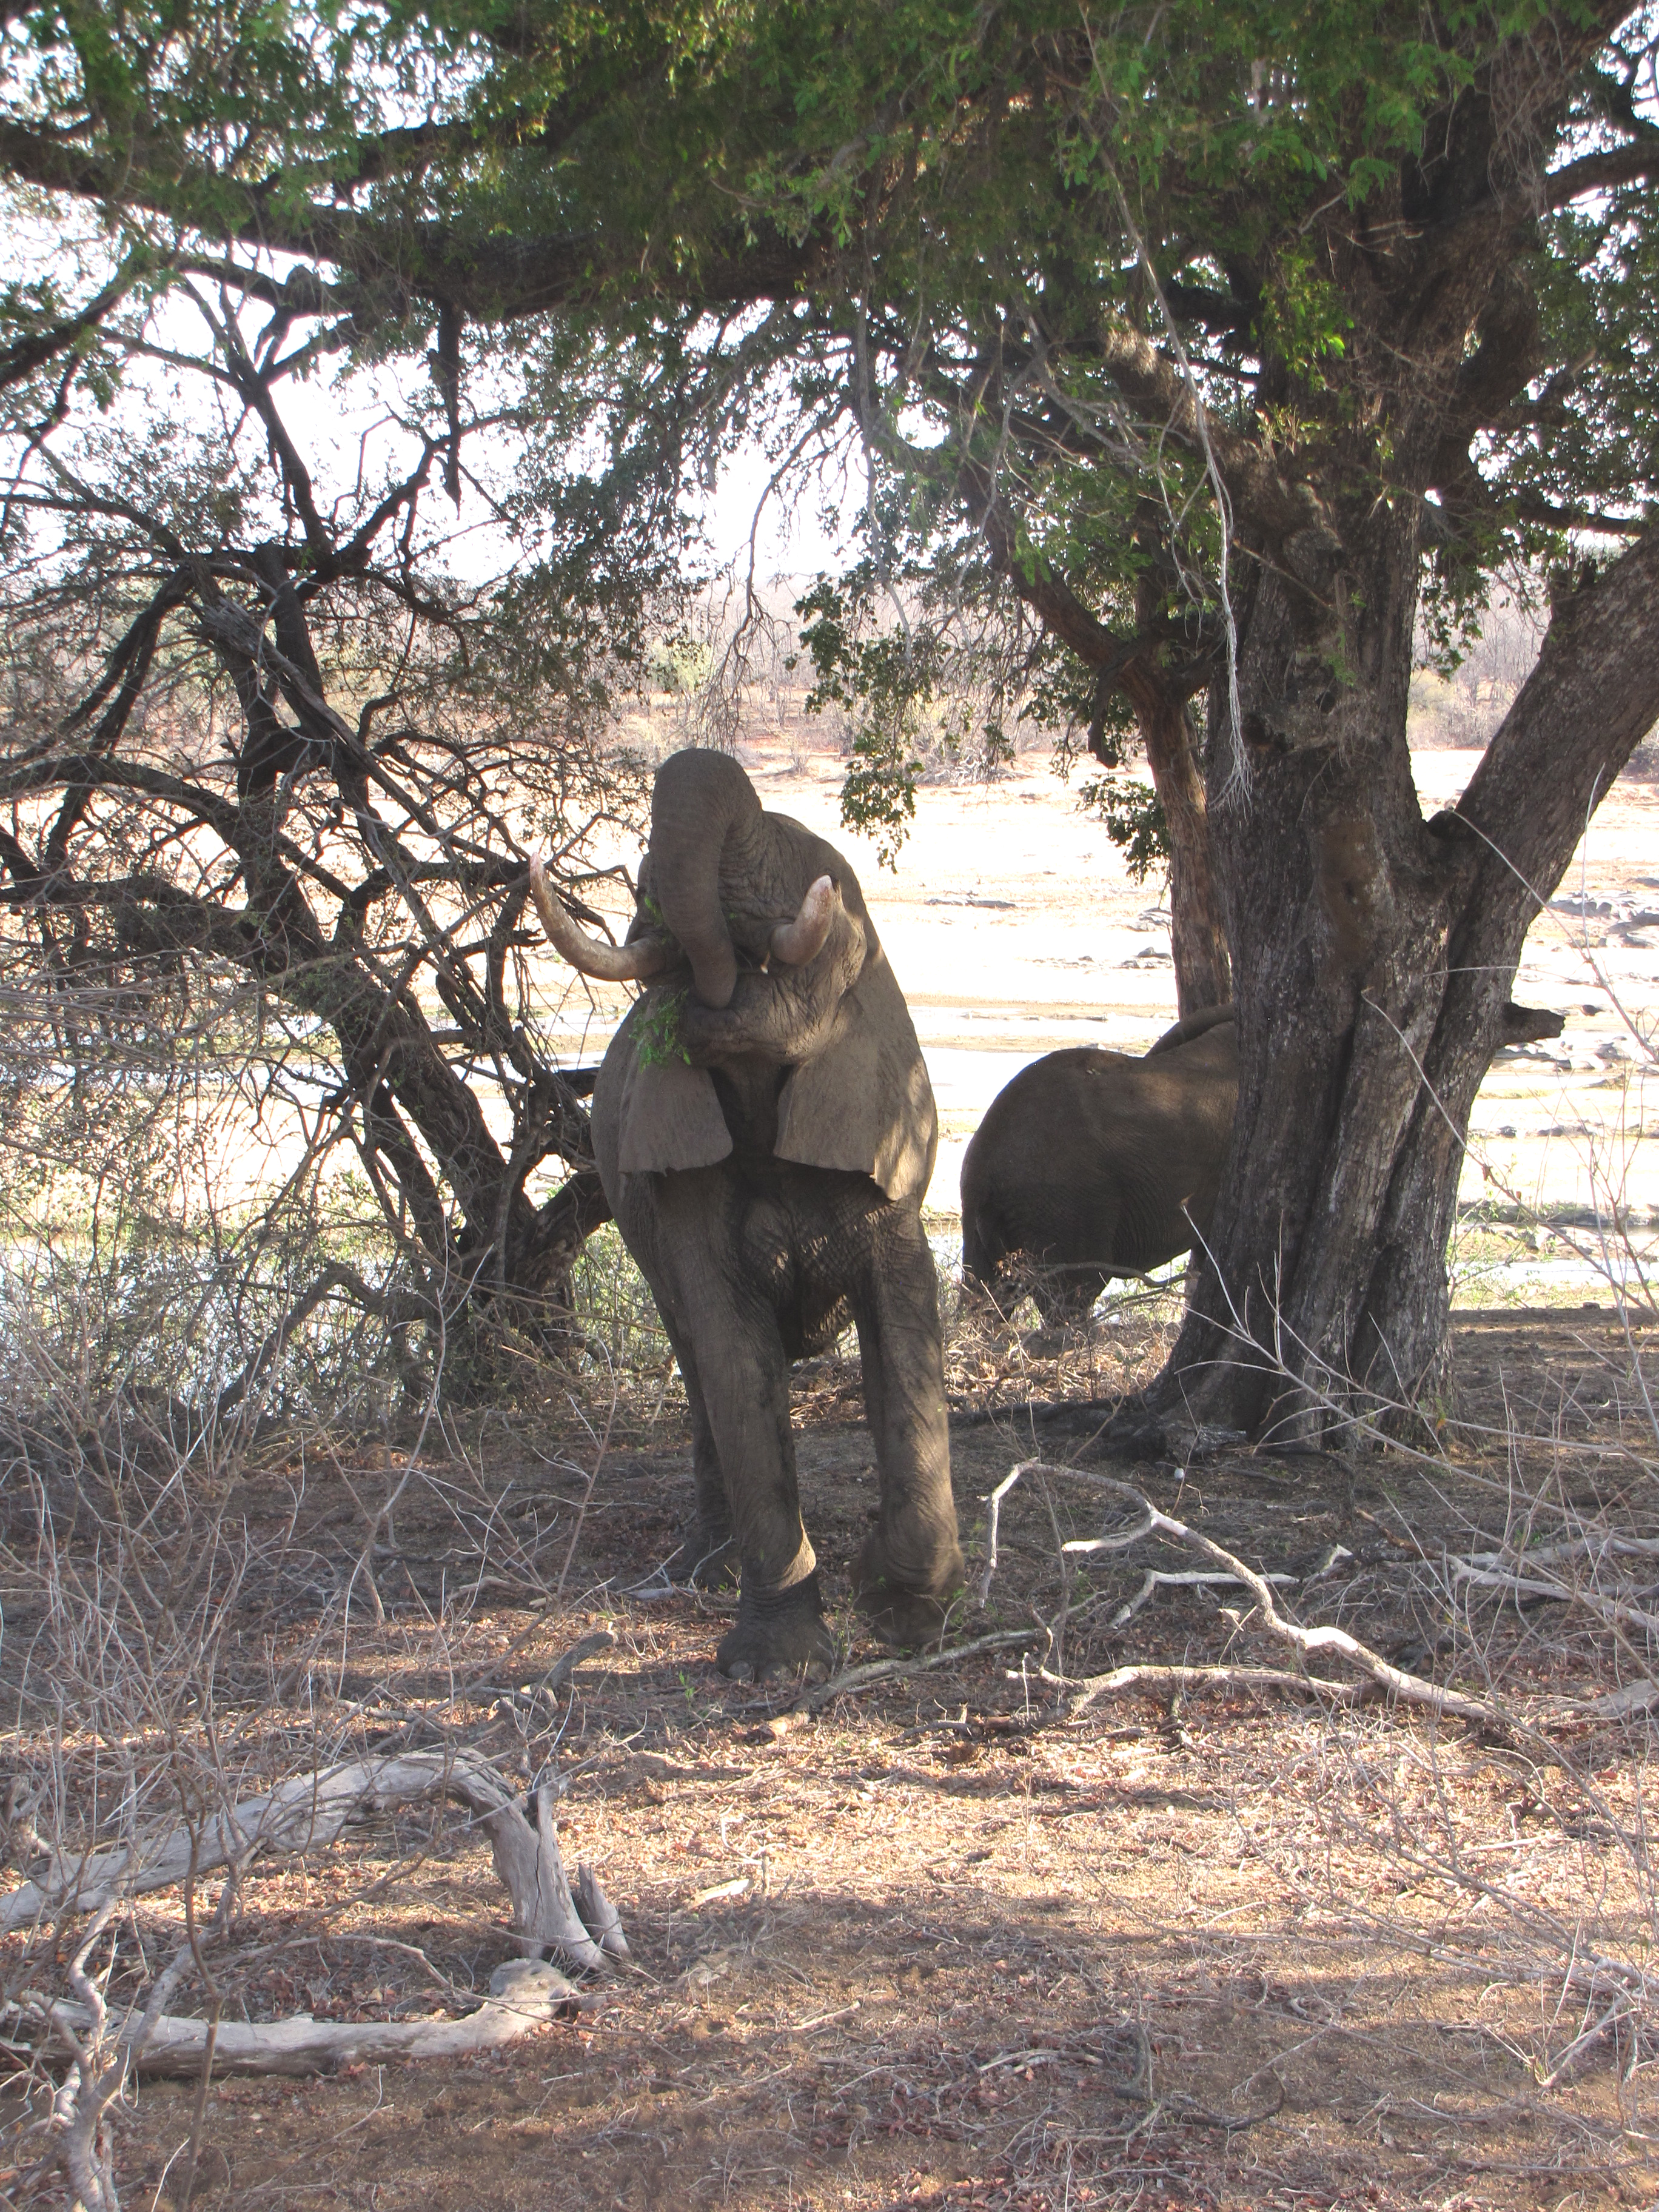 Elephant spotting in Kruger National Park